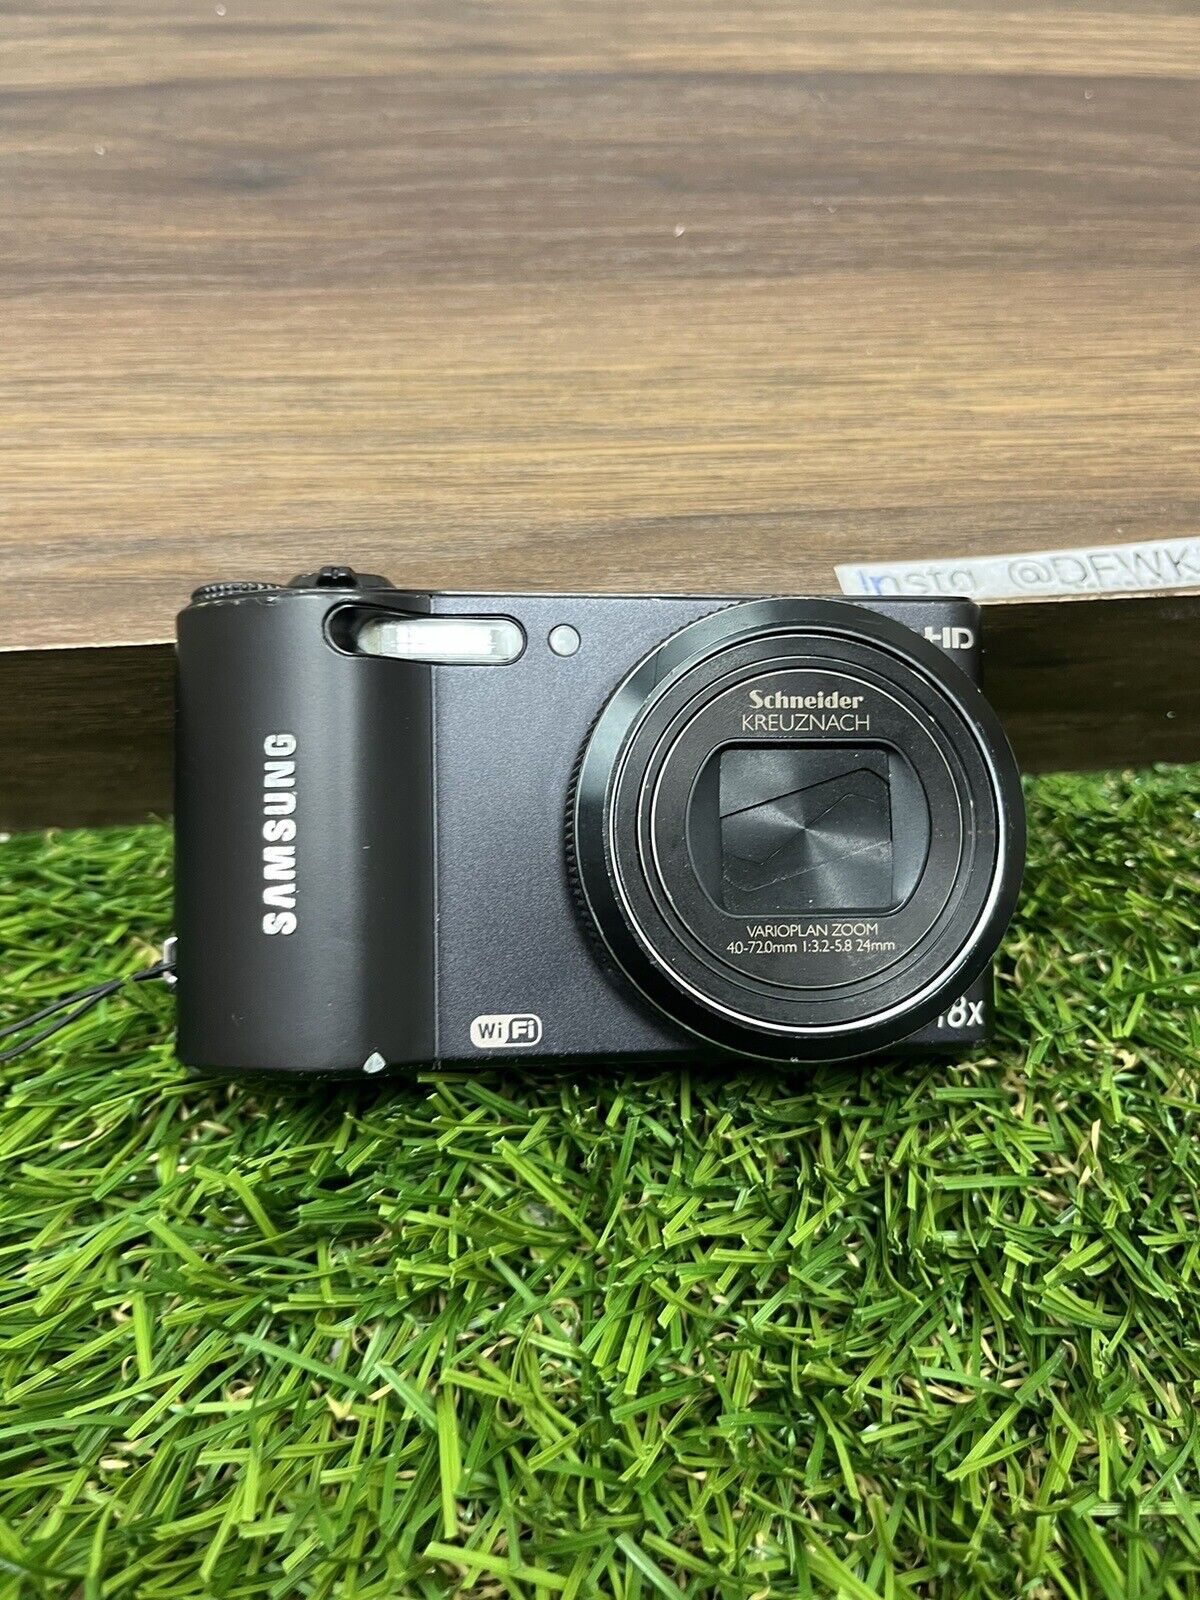 Samsung WB150F 14.2 MP Digital Camera AS IS